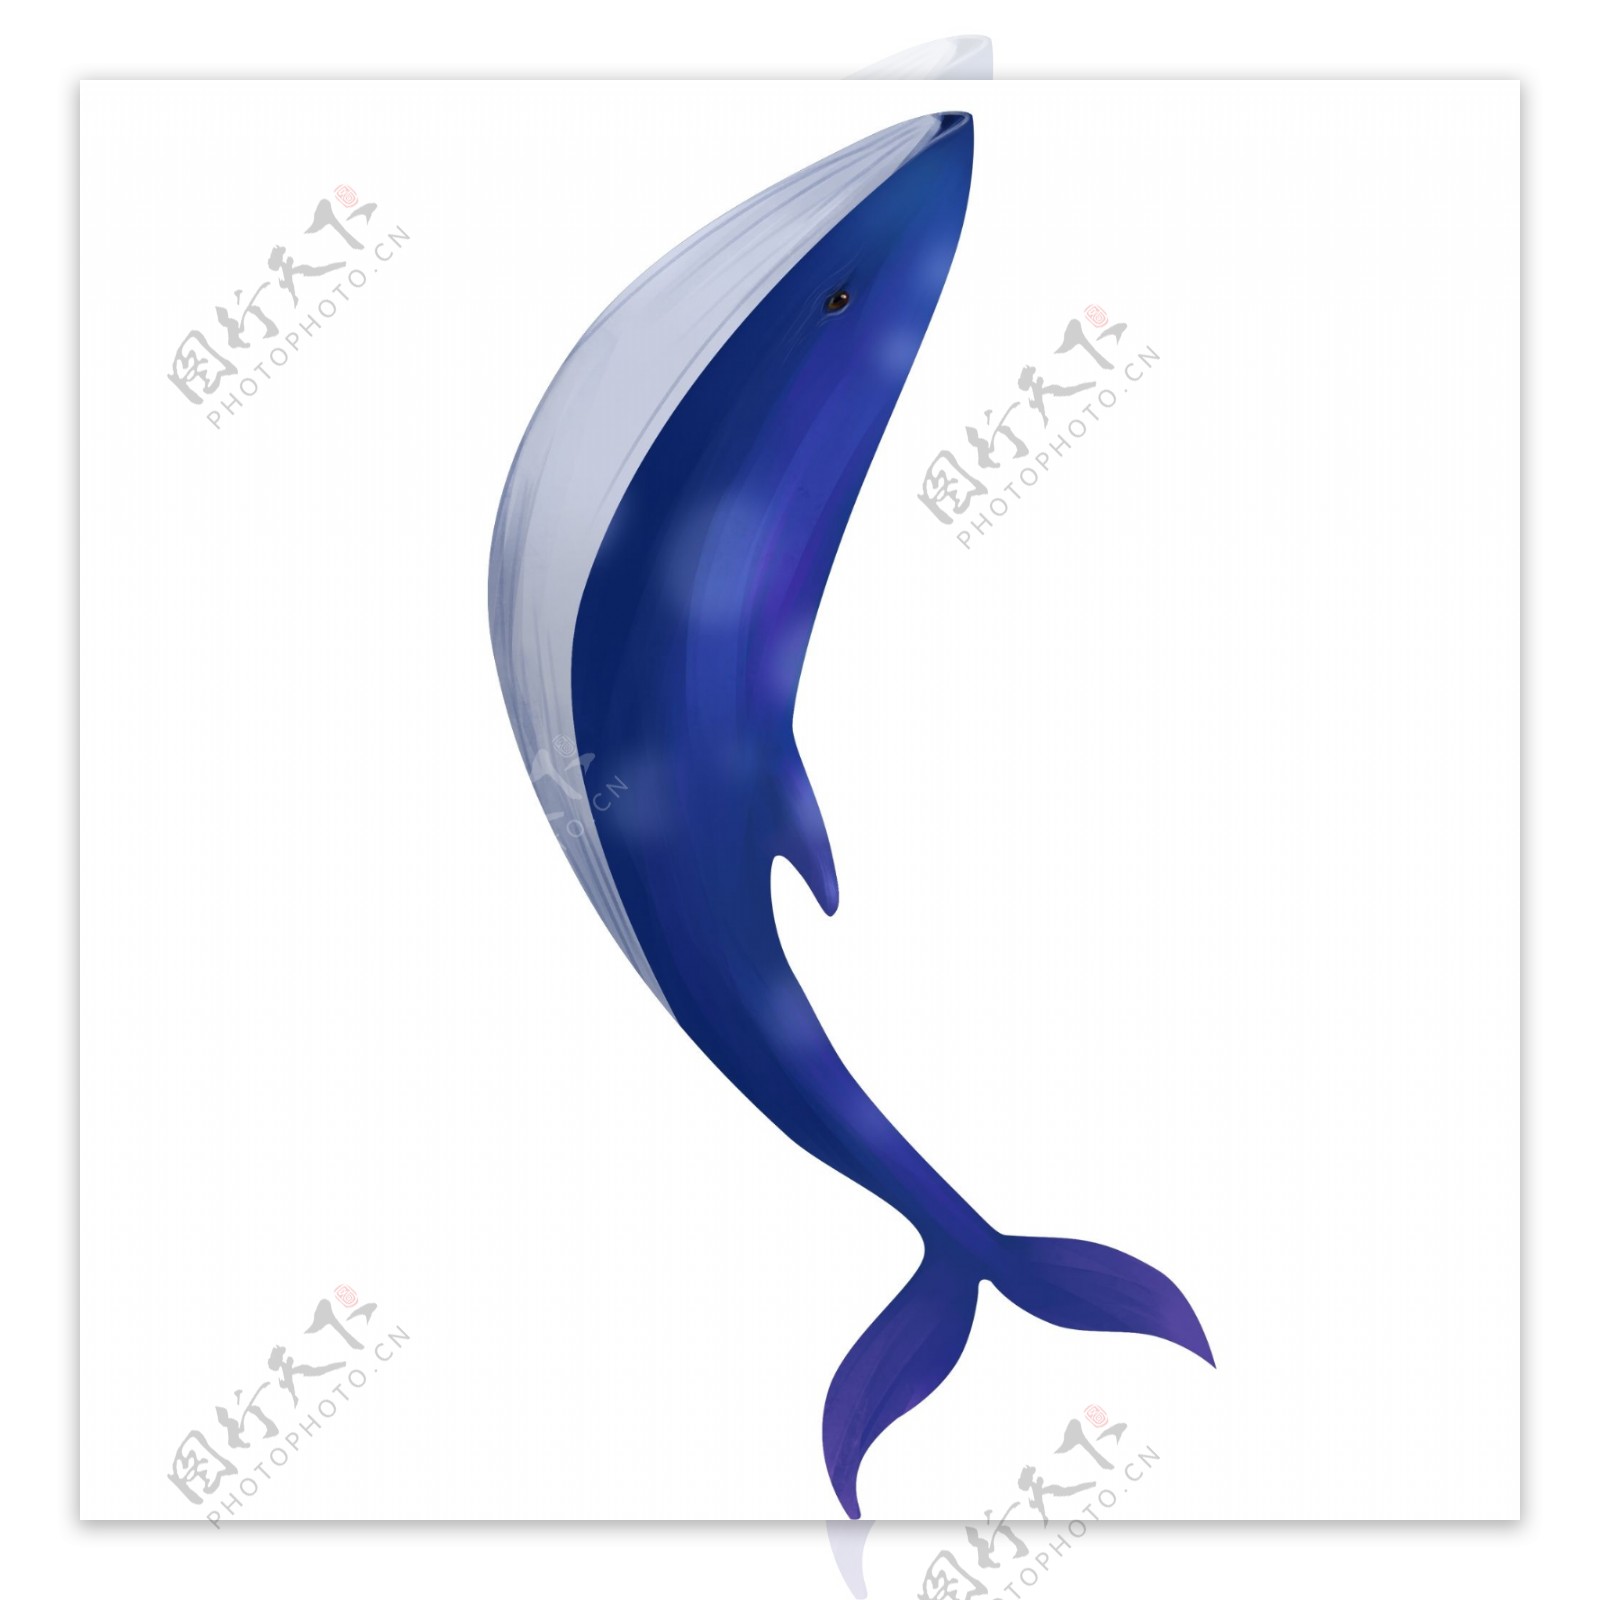 蓝色海洋鲸鱼插画